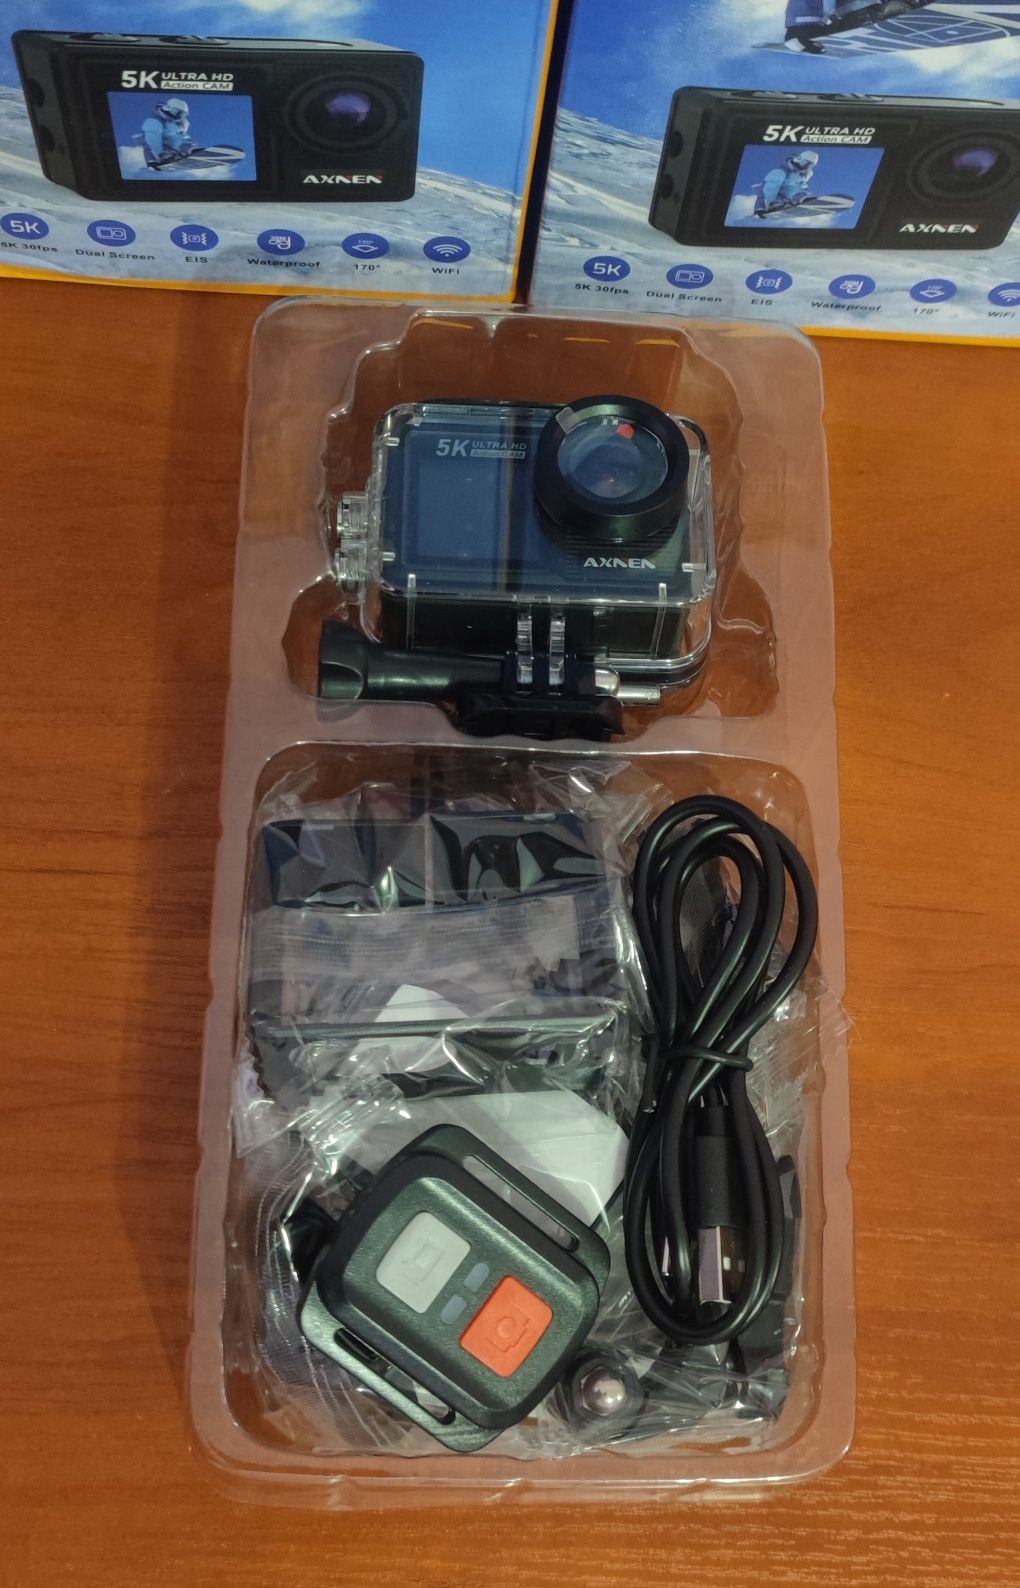 Екшн камери AXNEN AX3 5K EIS з аквабоксом і пультом